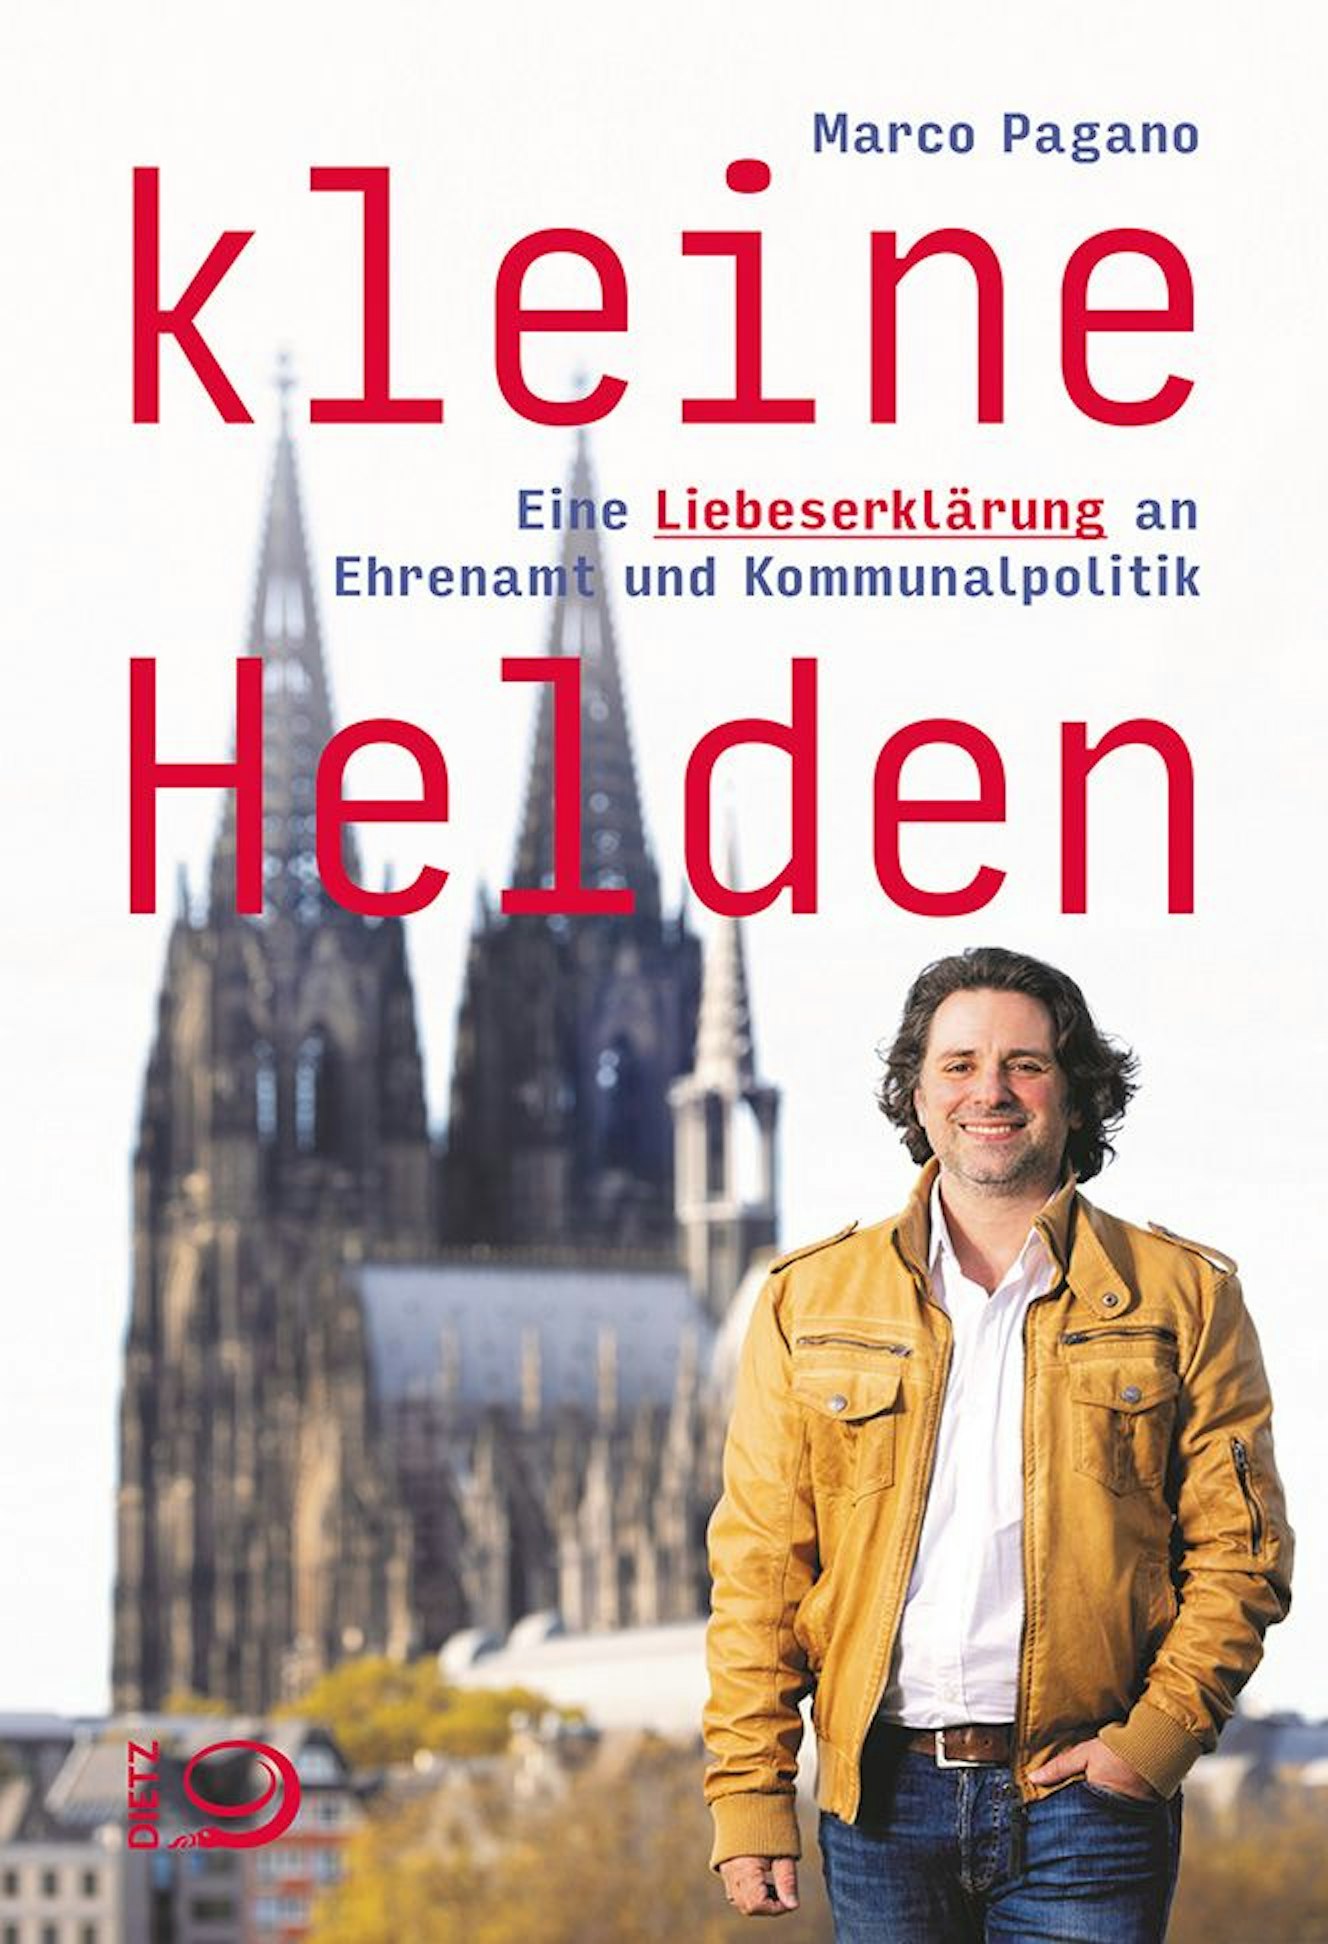 Das Cover von „Kleine Helden“ zeigt Marco Pagano vor dem Kölner Dom.